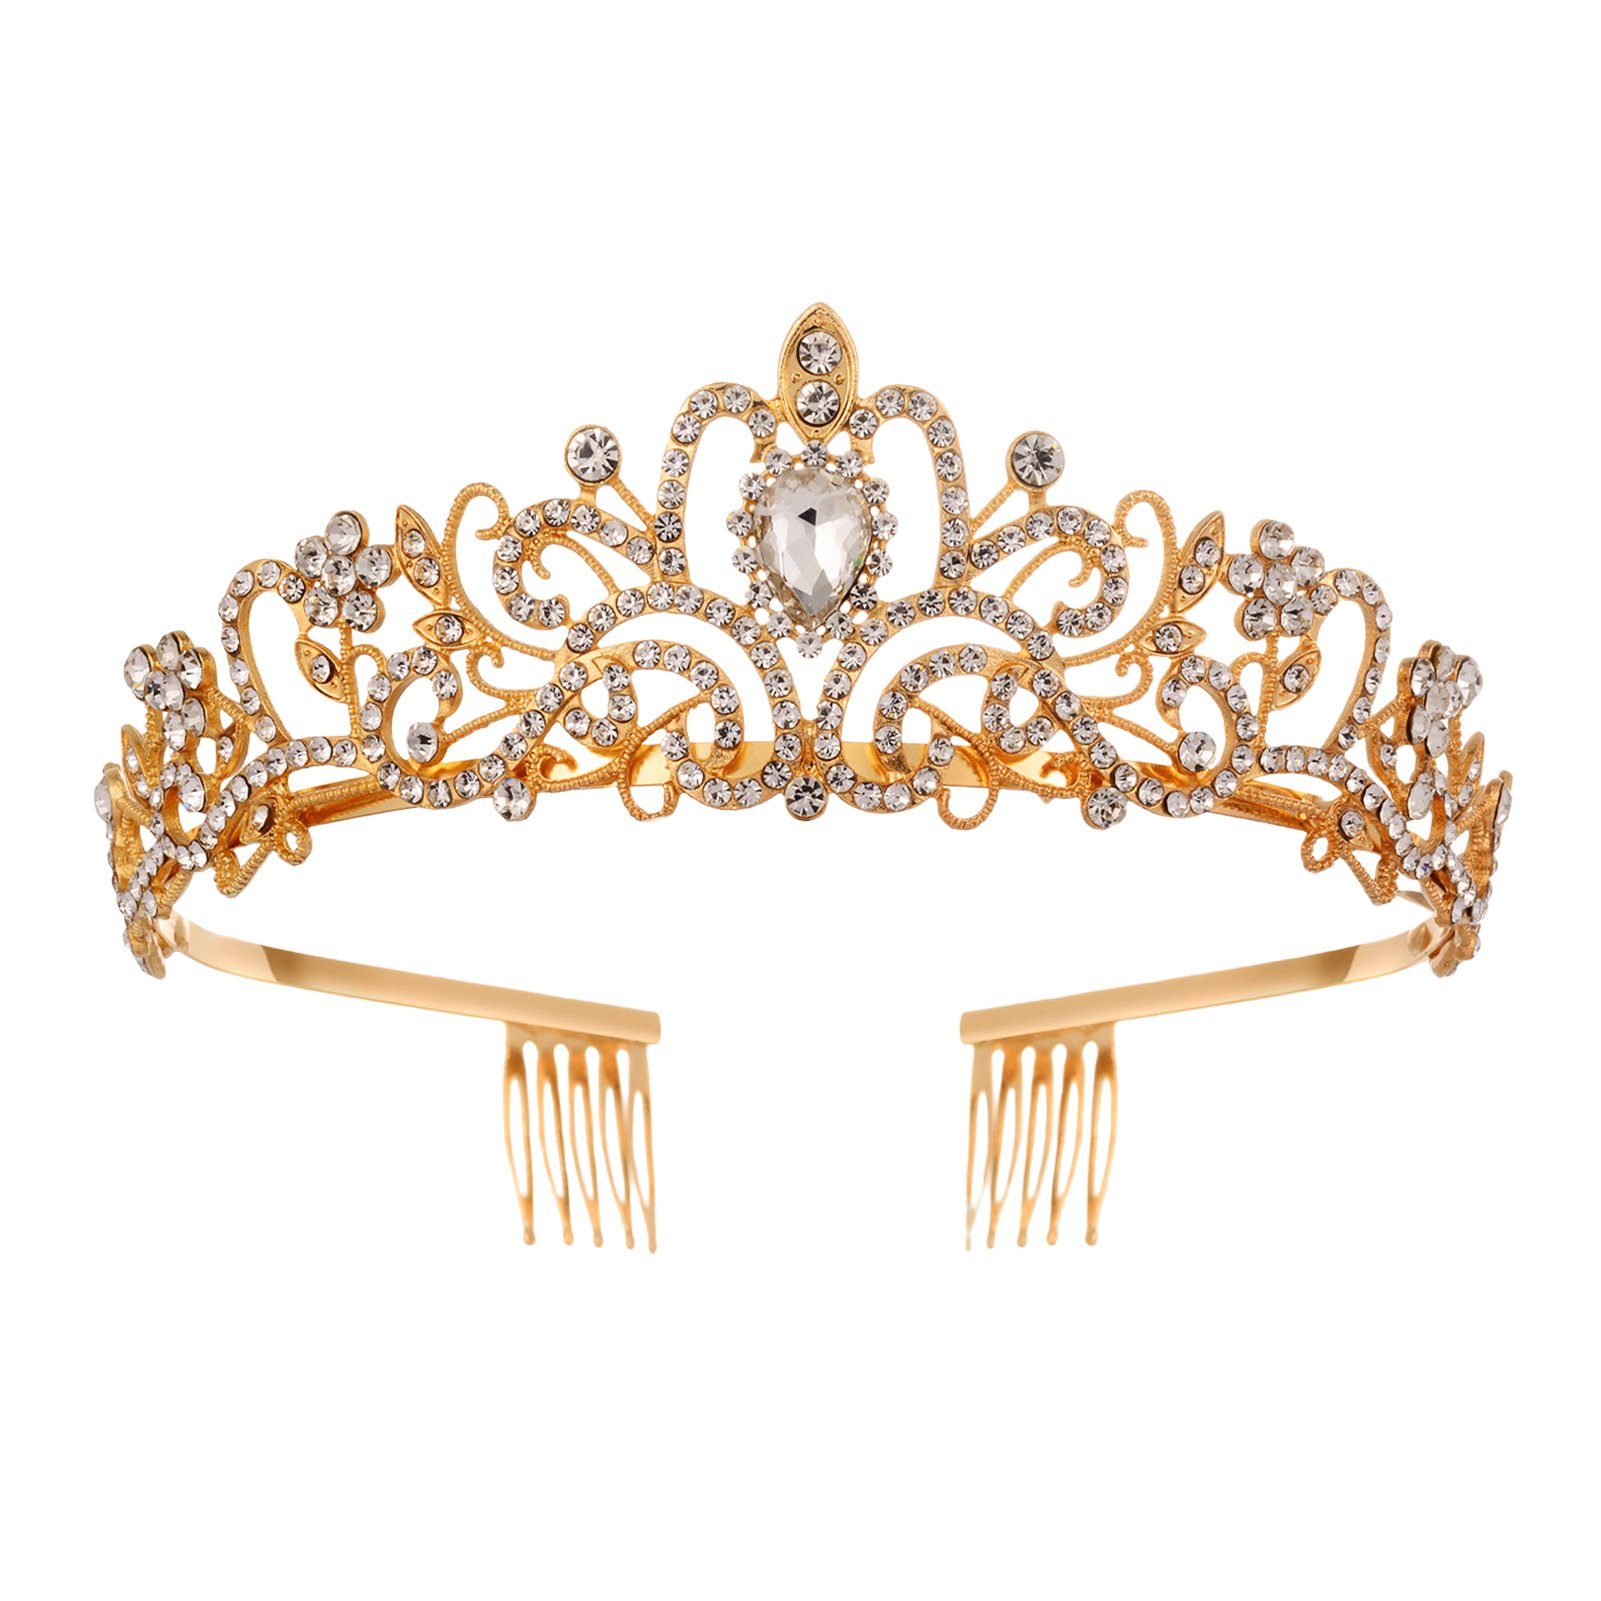 Blusmart Haarband Leichte, Luxuriöse Strass-Kronen-Tiaras Für Hochzeit, Haarschmuck, Haarband golden